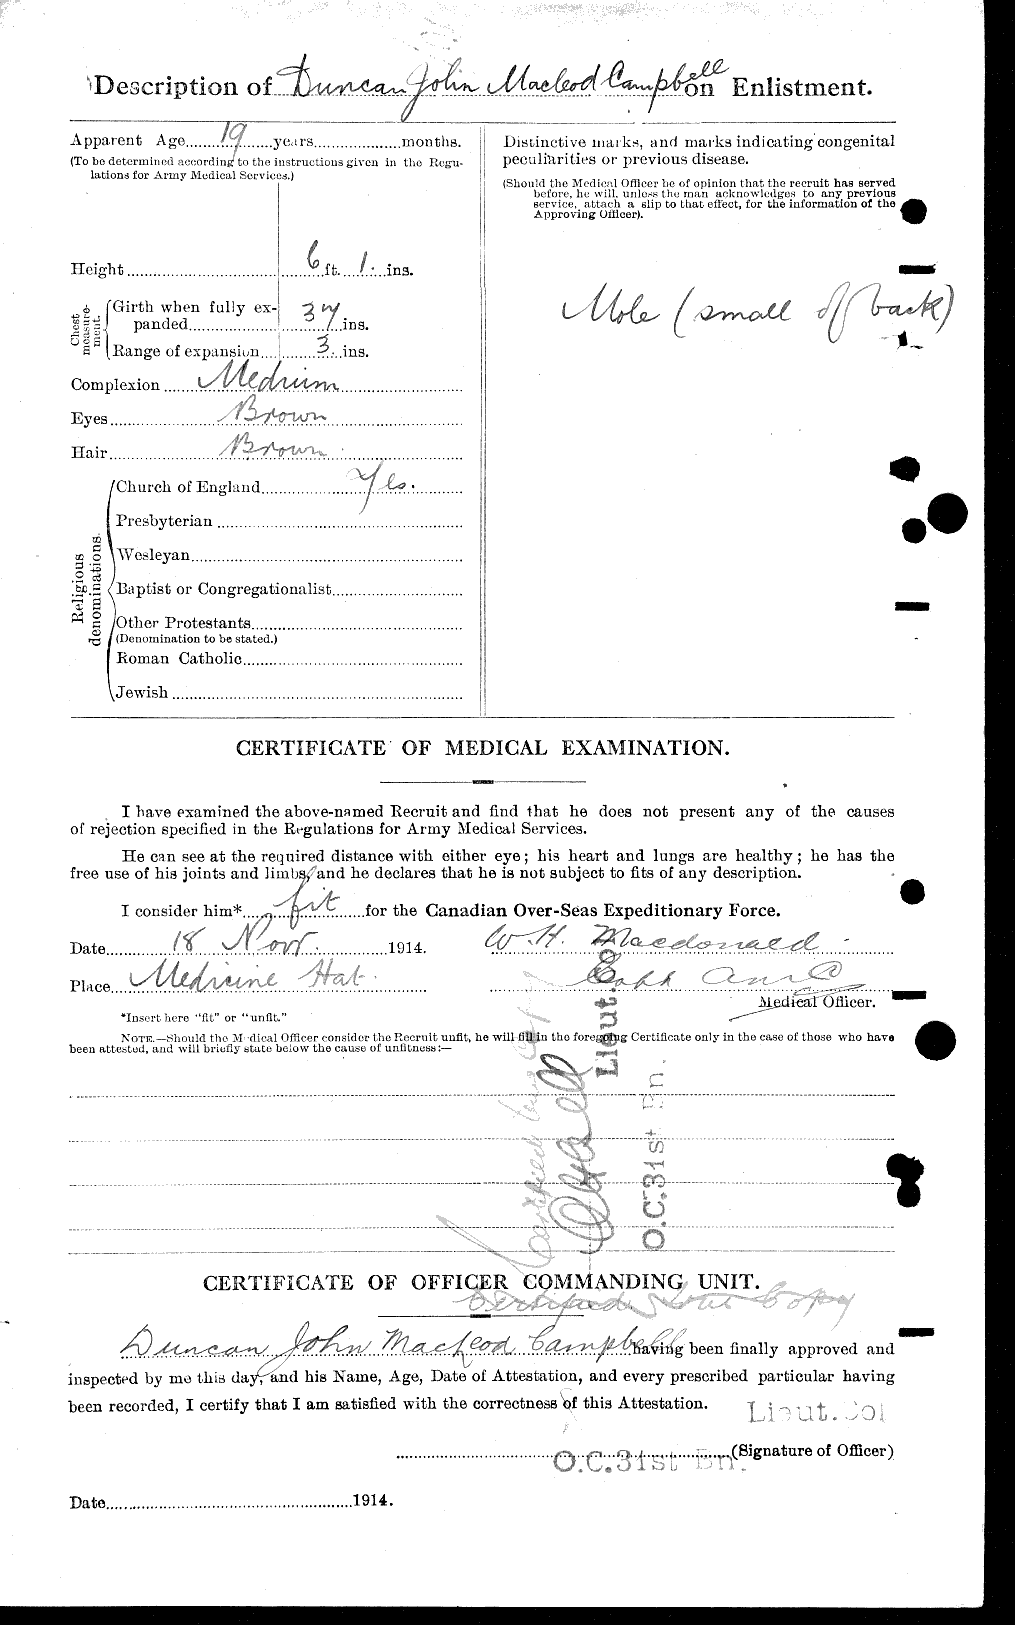 Dossiers du Personnel de la Première Guerre mondiale - CEC 008222b